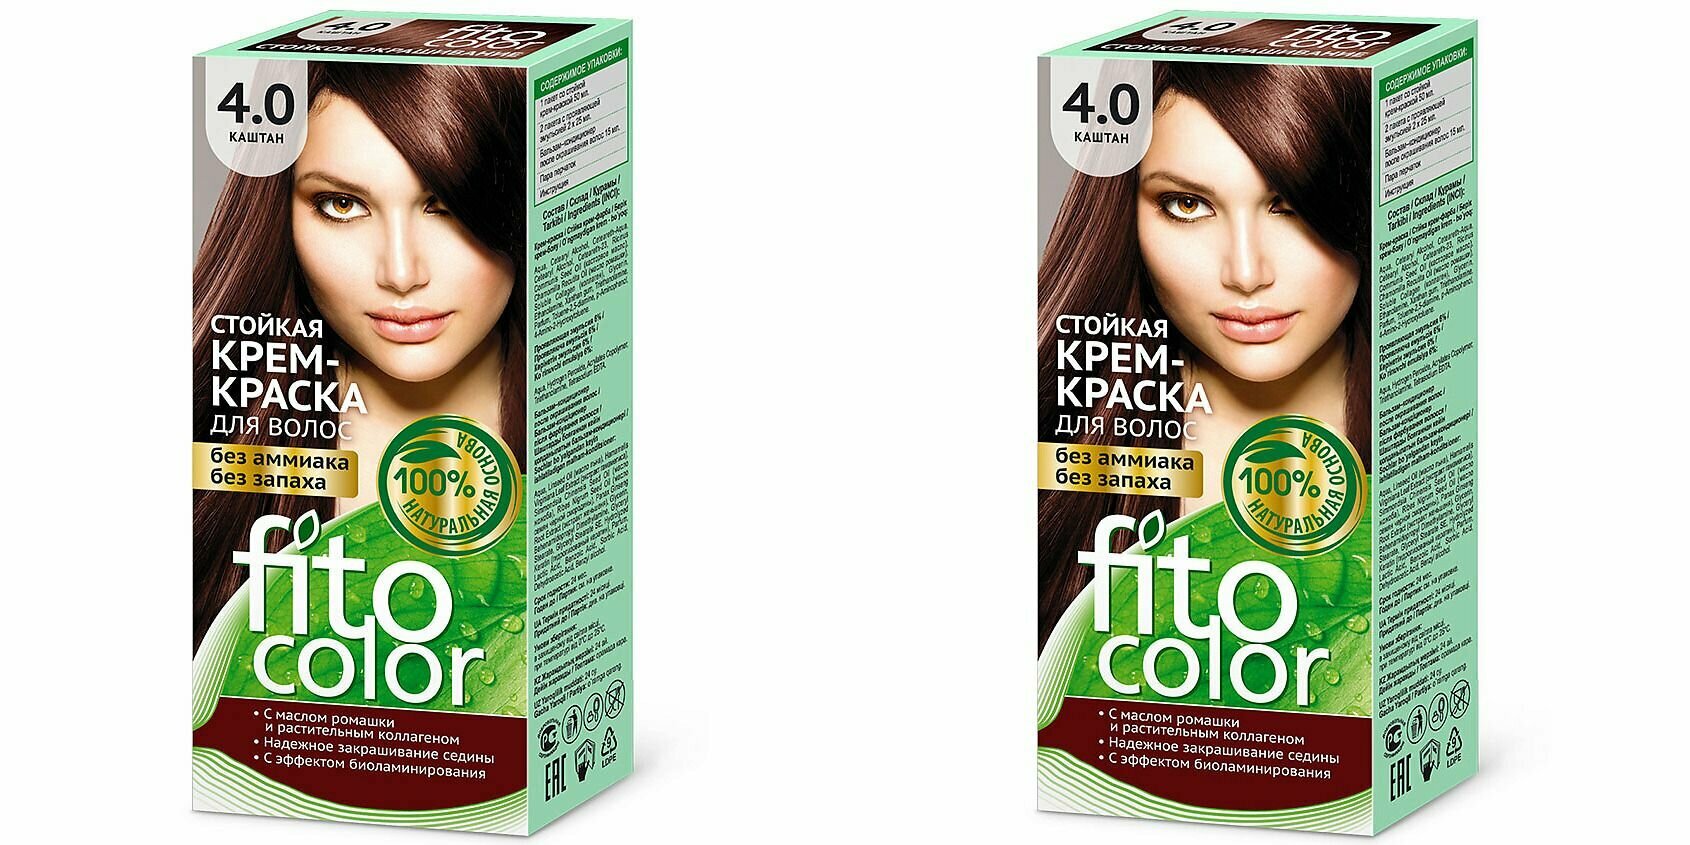 Fito Косметик Стойкая крем-краска для волос серии Fitocolor, тон 4, Каштан, 115 мл, 2 штуки